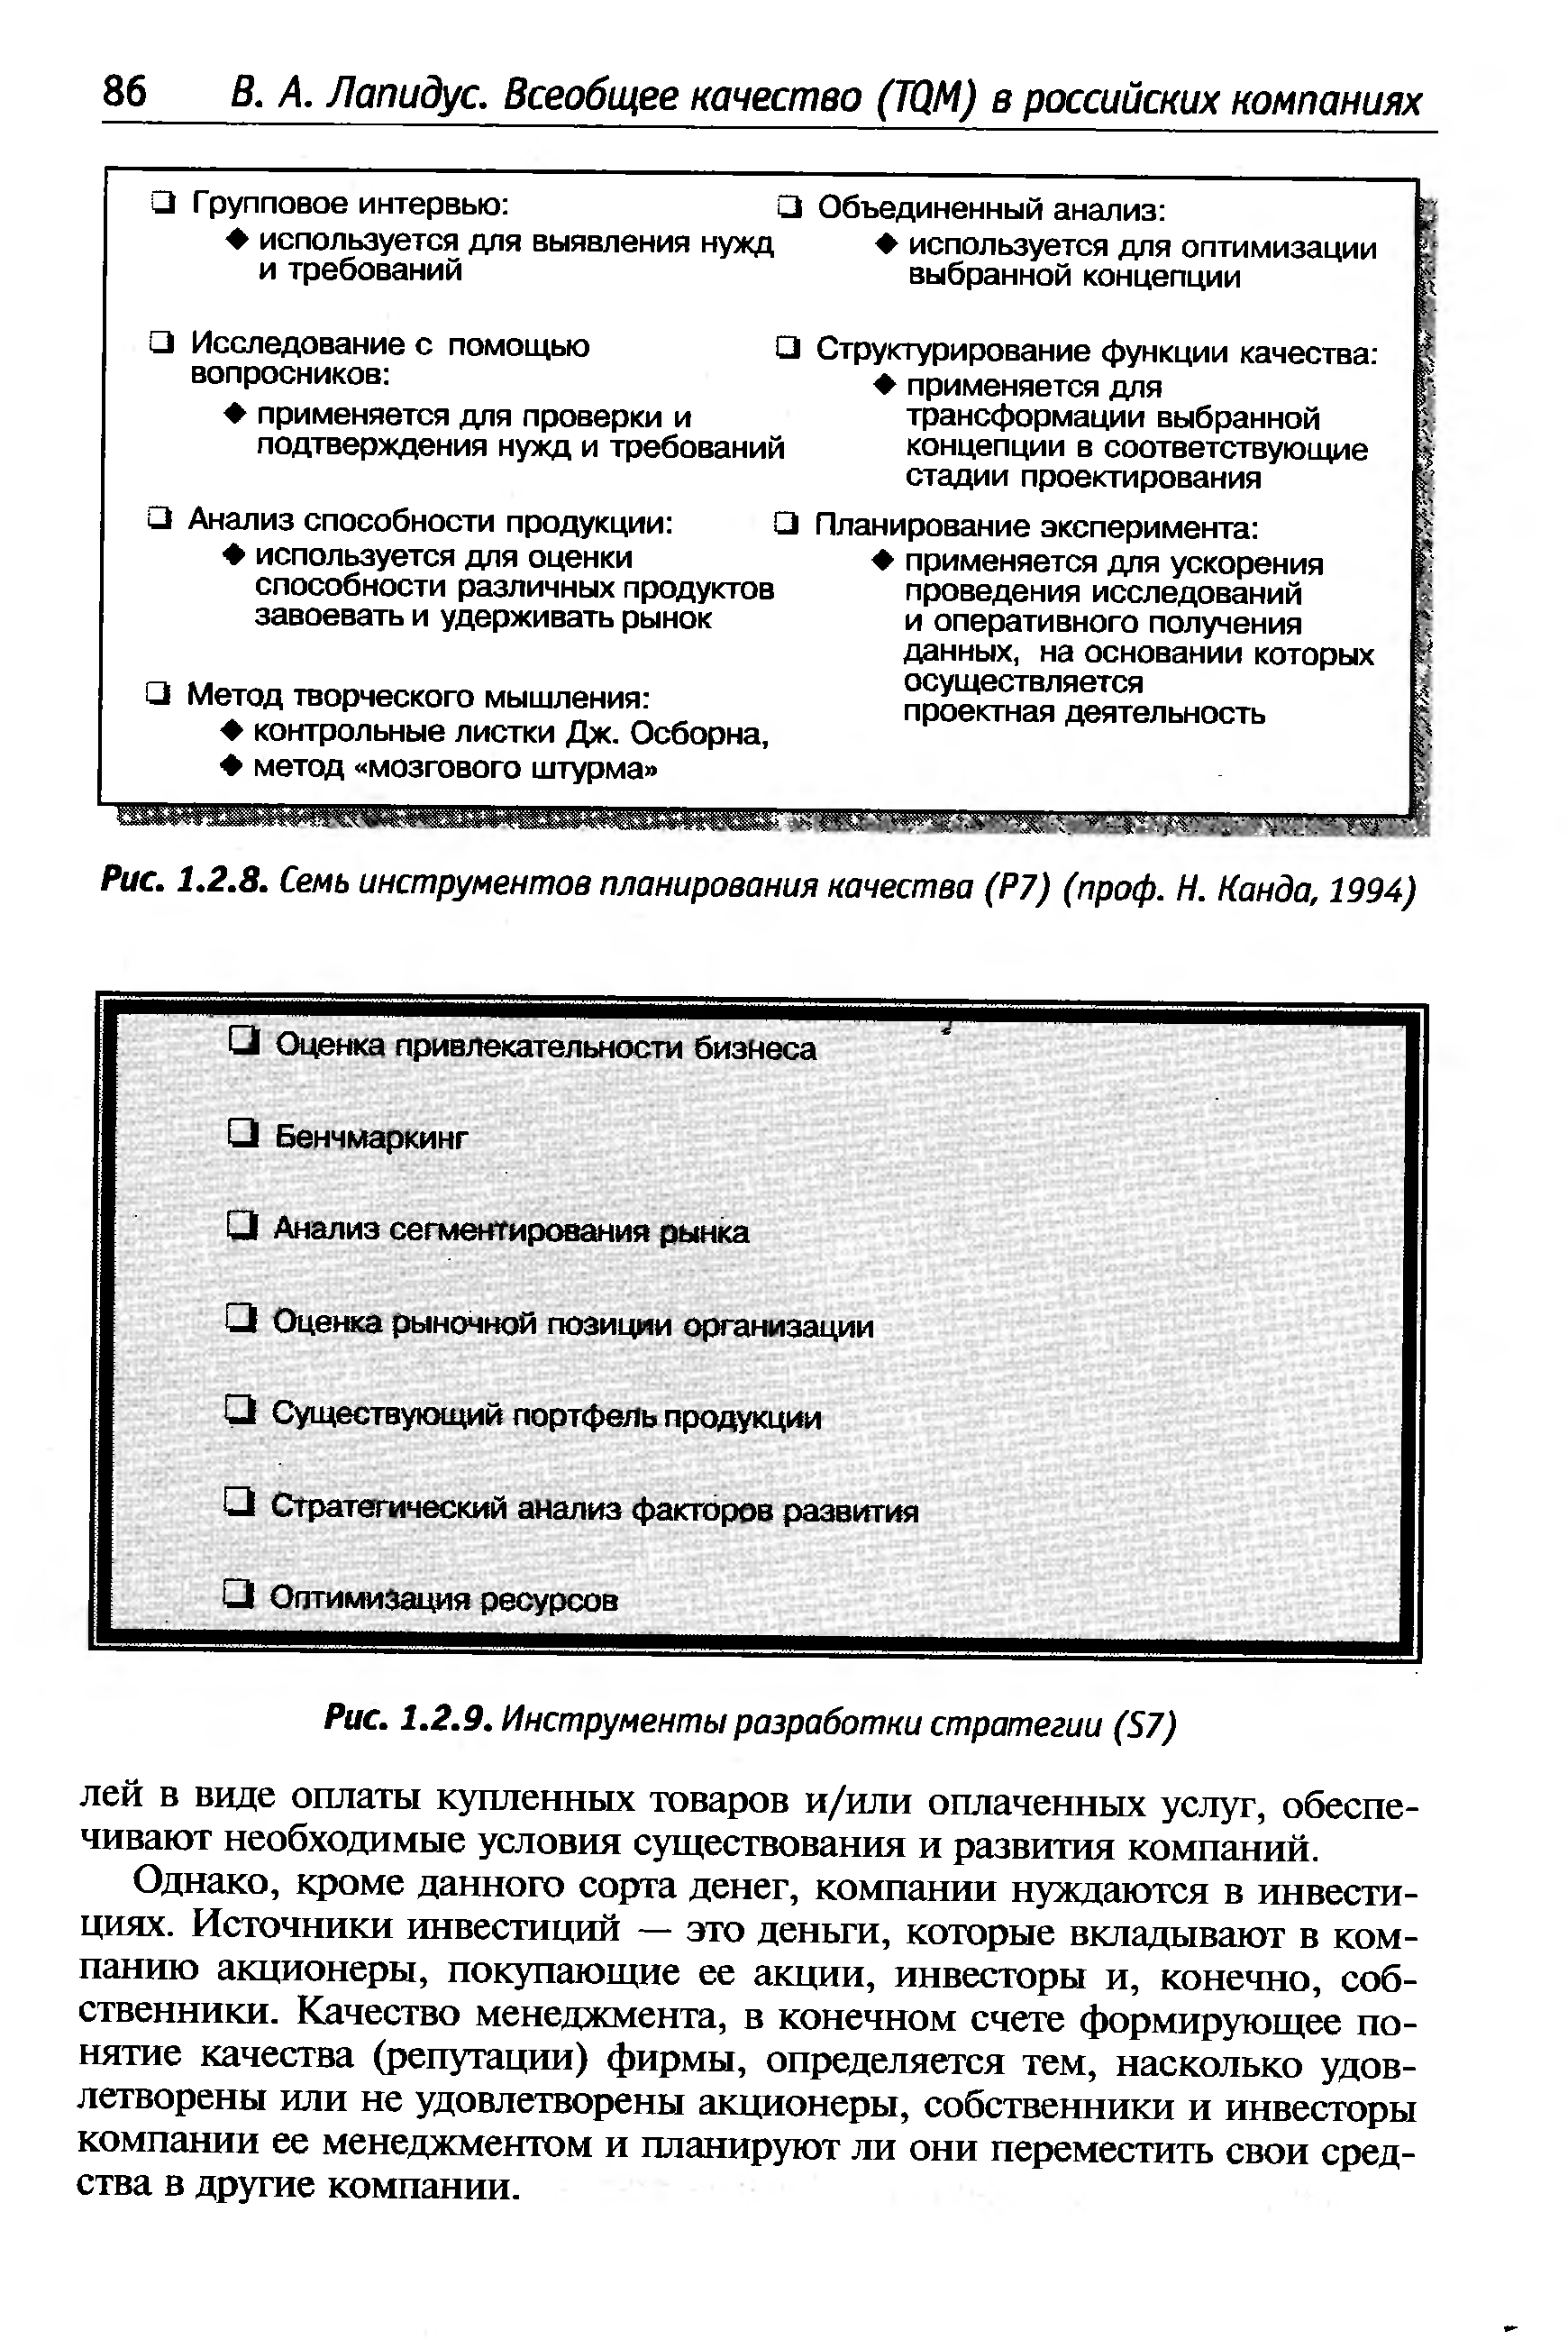 Рис. 1.2.8. Семь инструментов планирования качества (Р7) (проф. Н. Канда, 1994)
